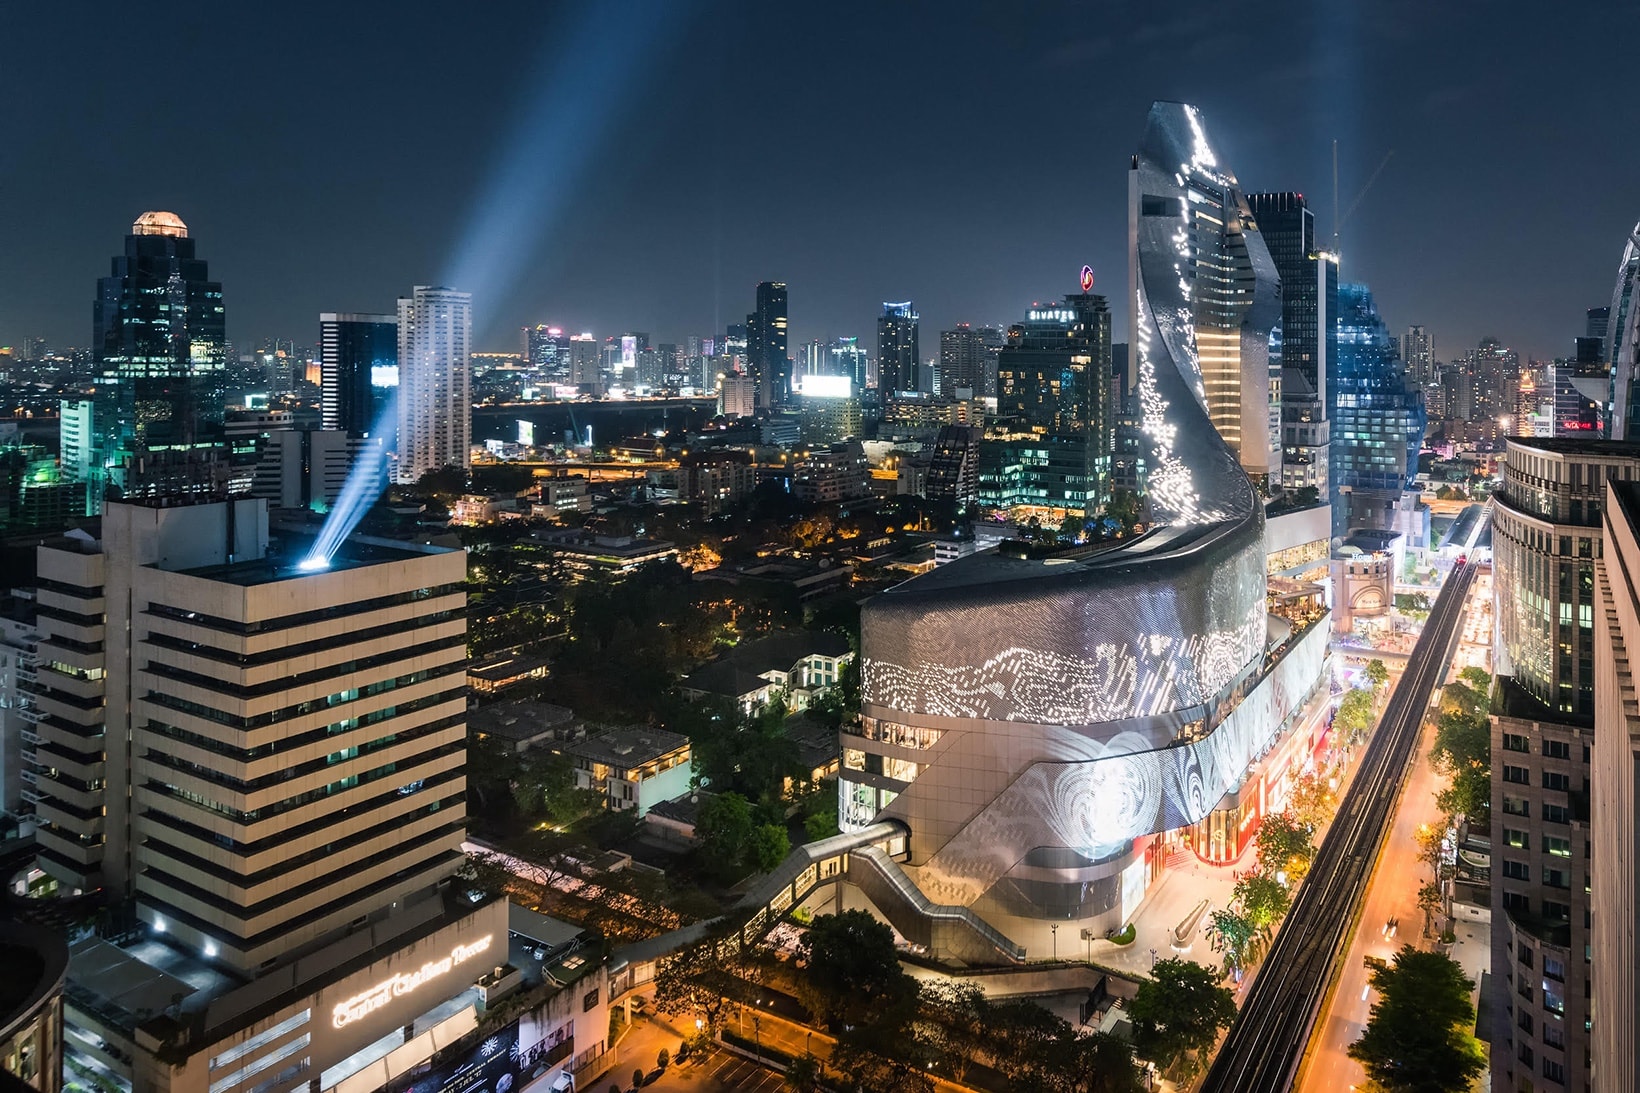 방콕 센트럴 앰버시 파크 하얏트 2017 Central Embassy Park Hyatt Bangkok